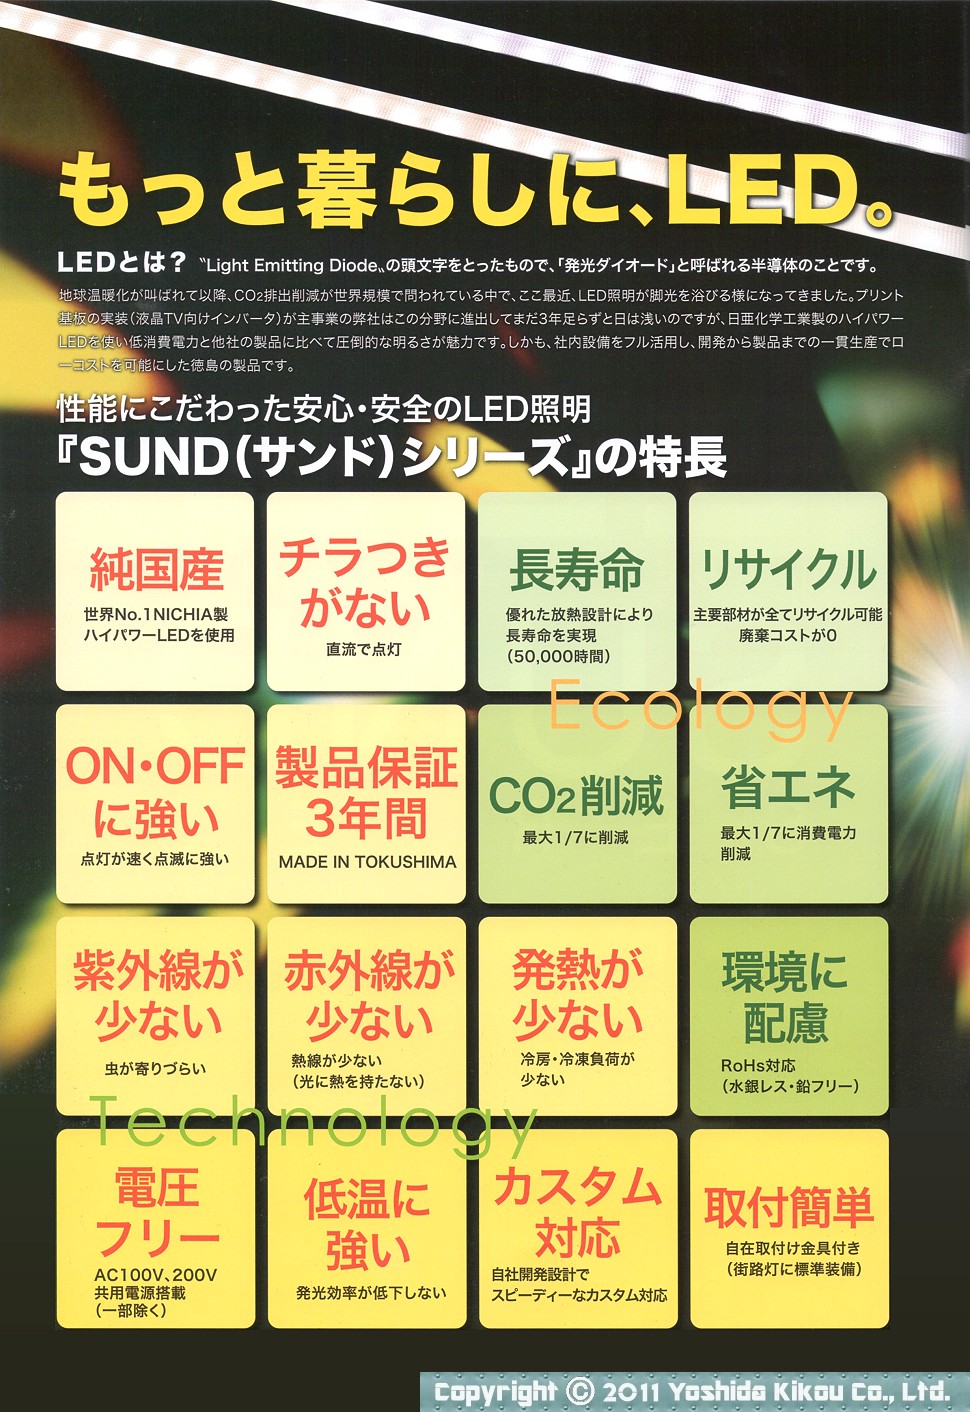 次世代LED照明「SUNDシリーズ」 02